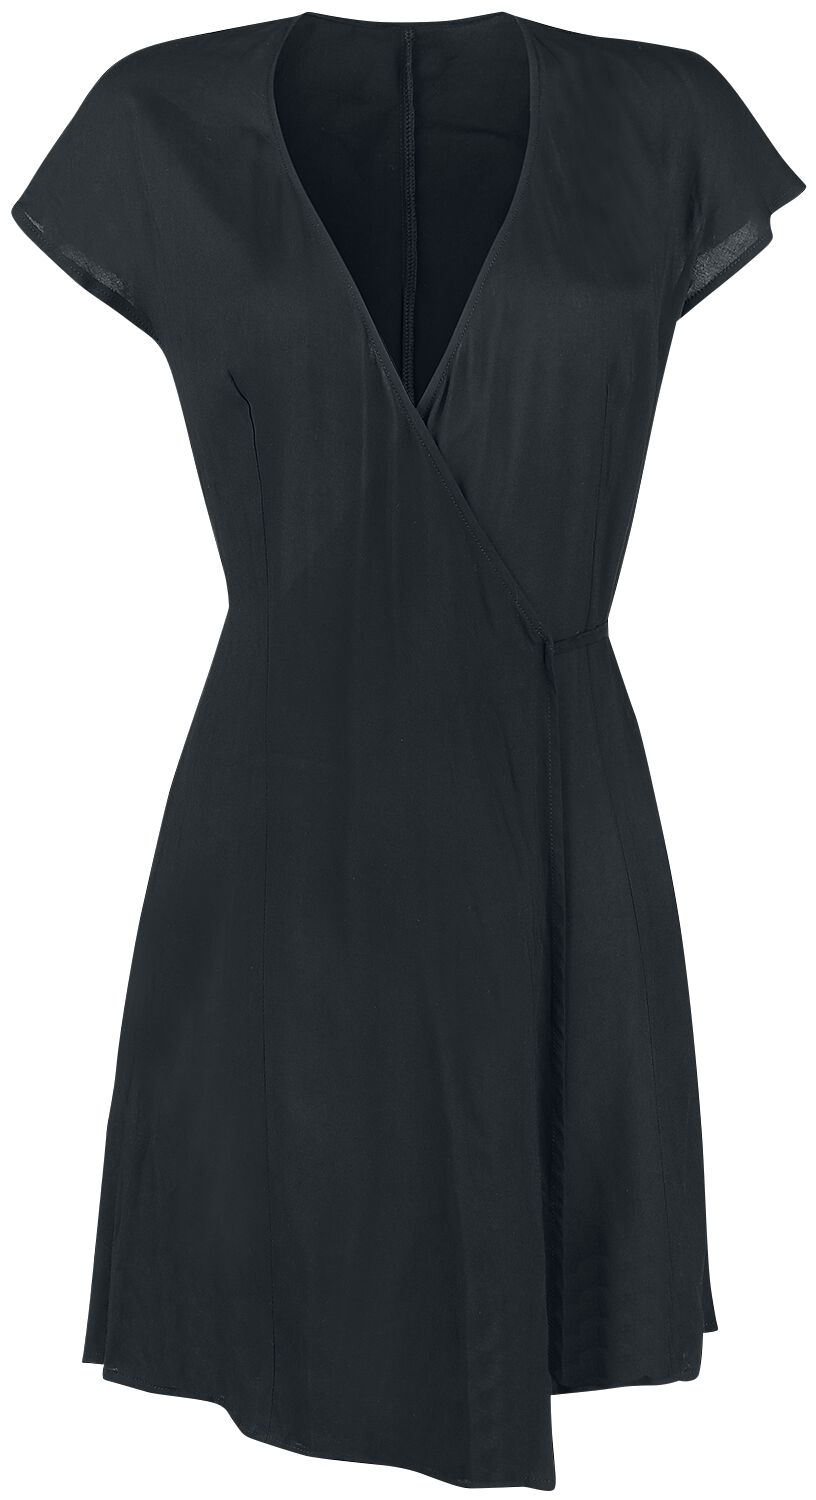 Forplay Wickelkleid mit Bindegürtel Mittellanges Kleid schwarz in M